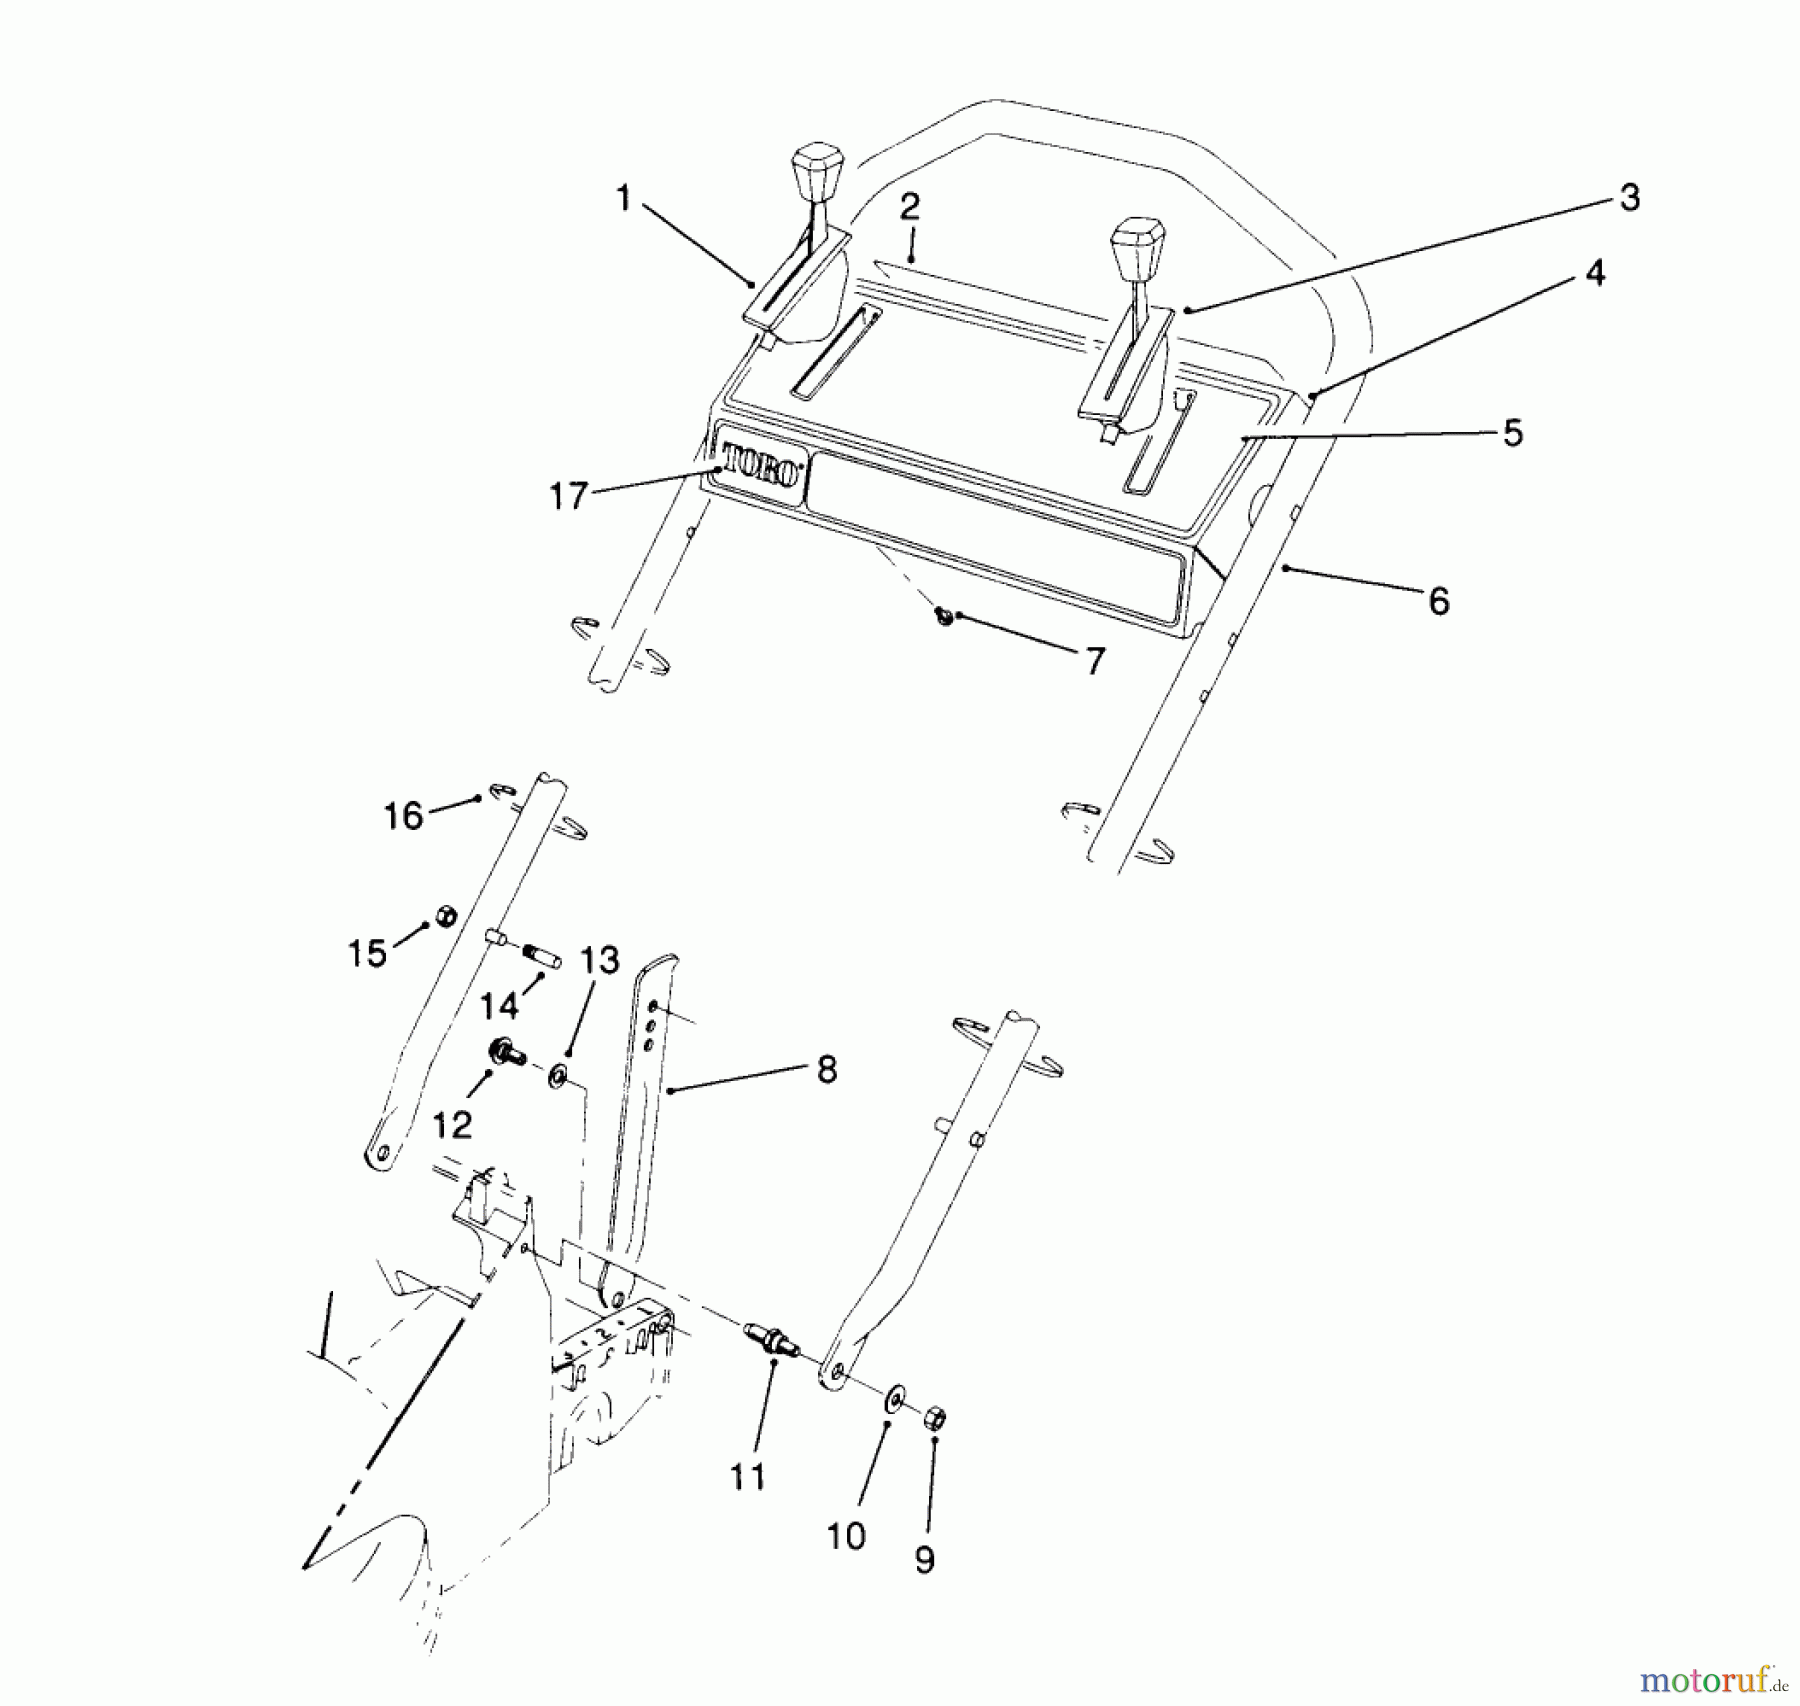  Toro Neu Mowers, Walk-Behind Seite 2 26623 - Toro Lawnmower, 1990 (0000001-0999999) HANDLE ASSEMBLY